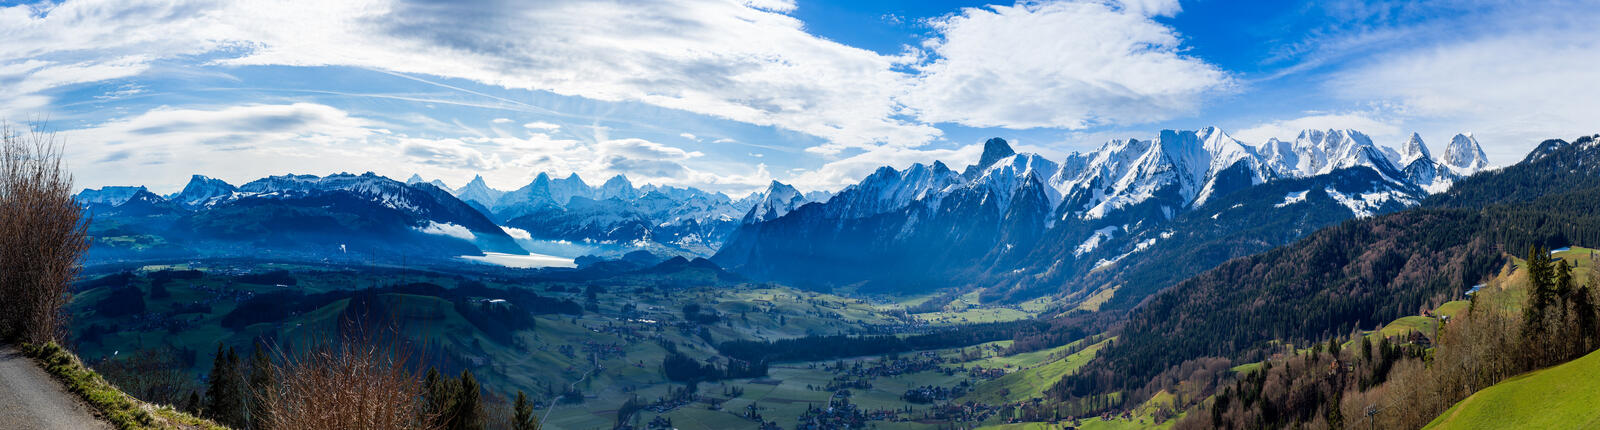 Бесплатное фото Вид на просторы с самой высокой горы